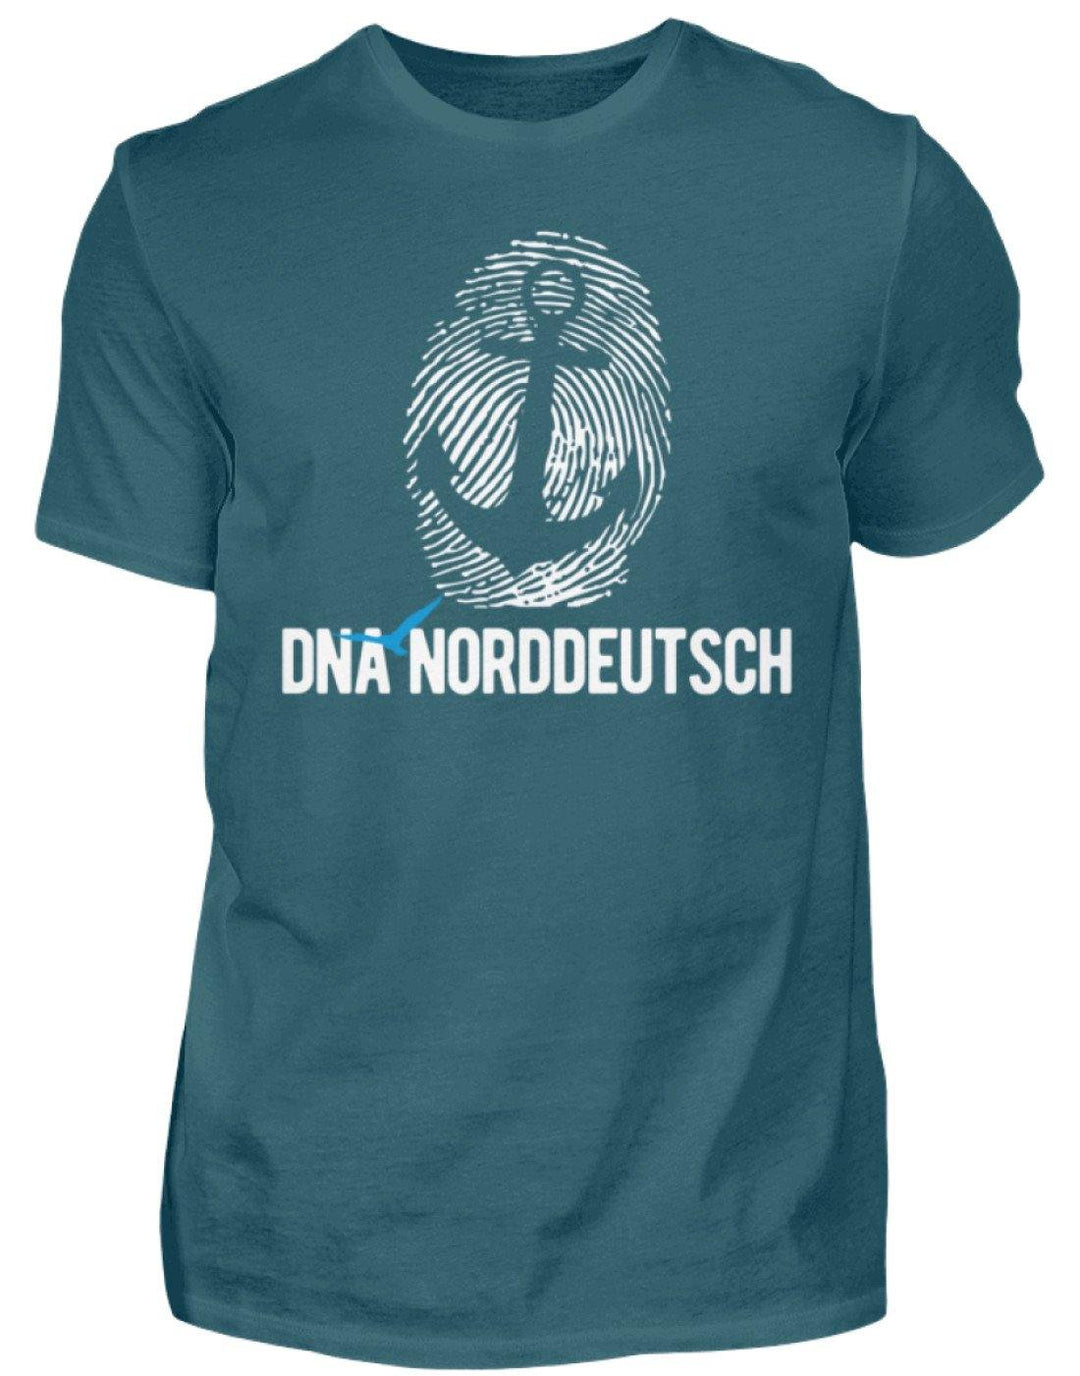 DNA Norddeutsch  - Herren Shirt - Words on Shirts Sag es mit dem Mittelfinger Shirts Hoodies Sweatshirt Taschen Gymsack Spruch Sprüche Statement